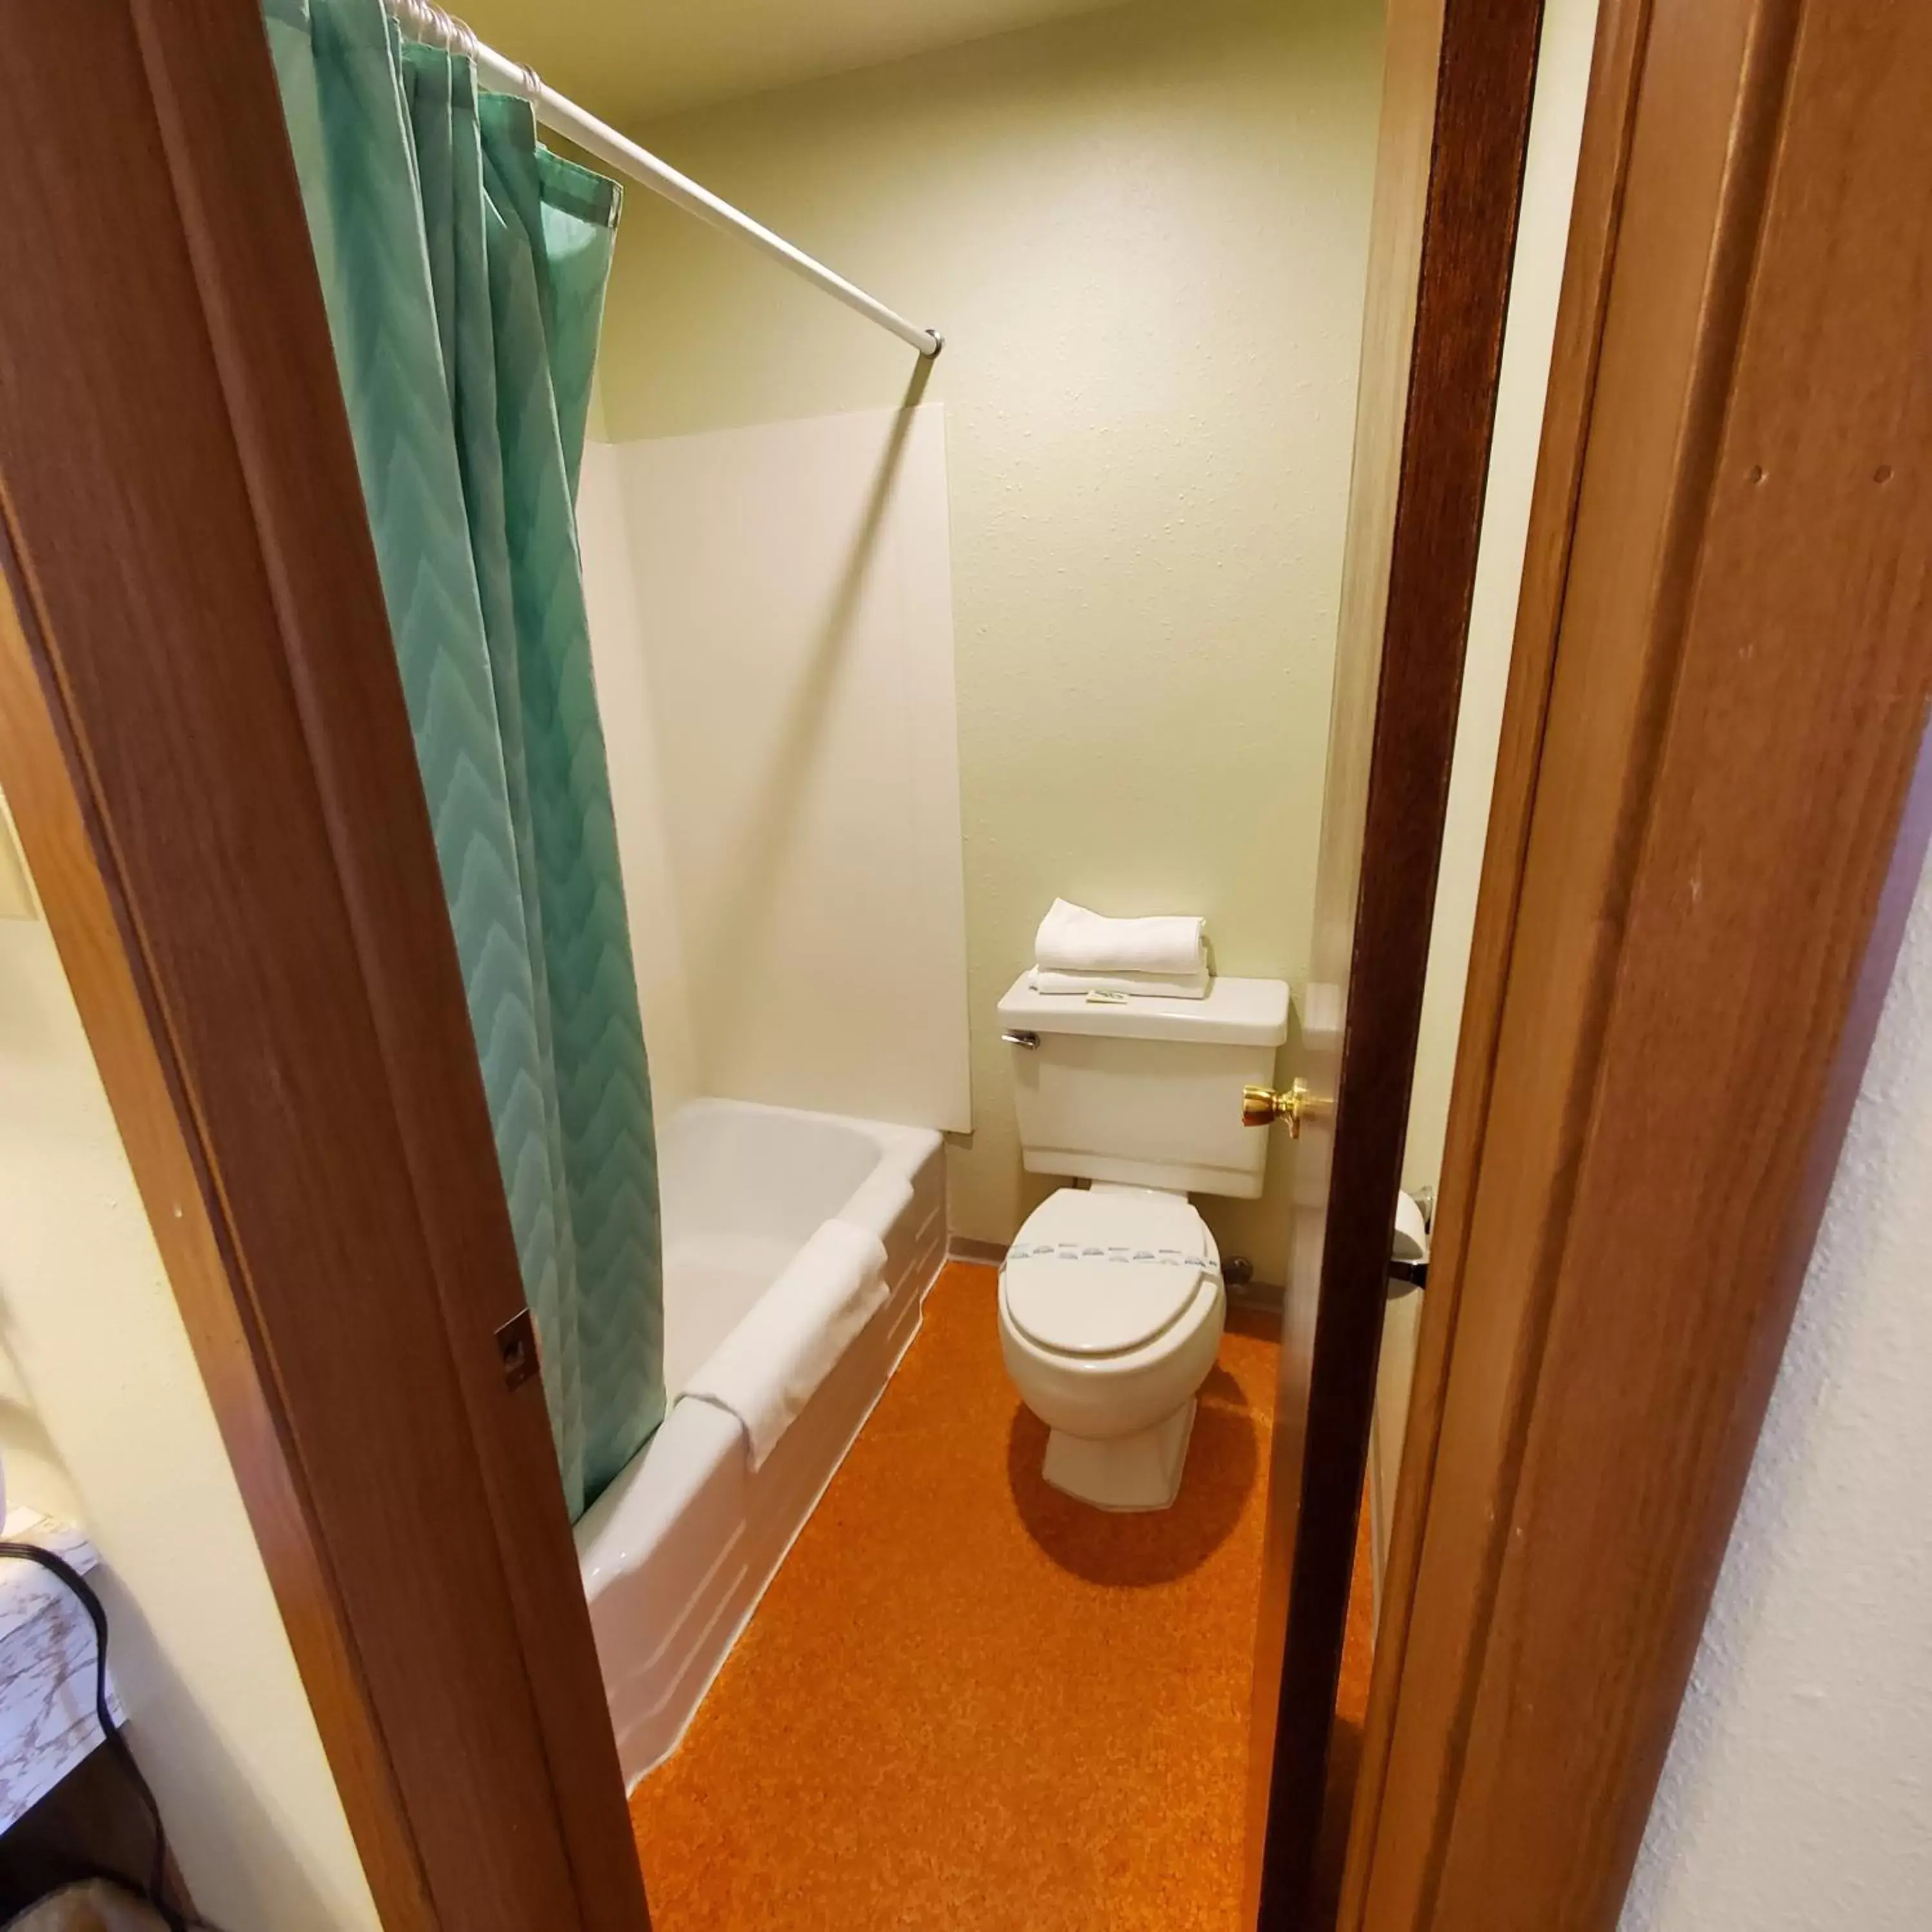 Bathroom in Robin Hood Motel